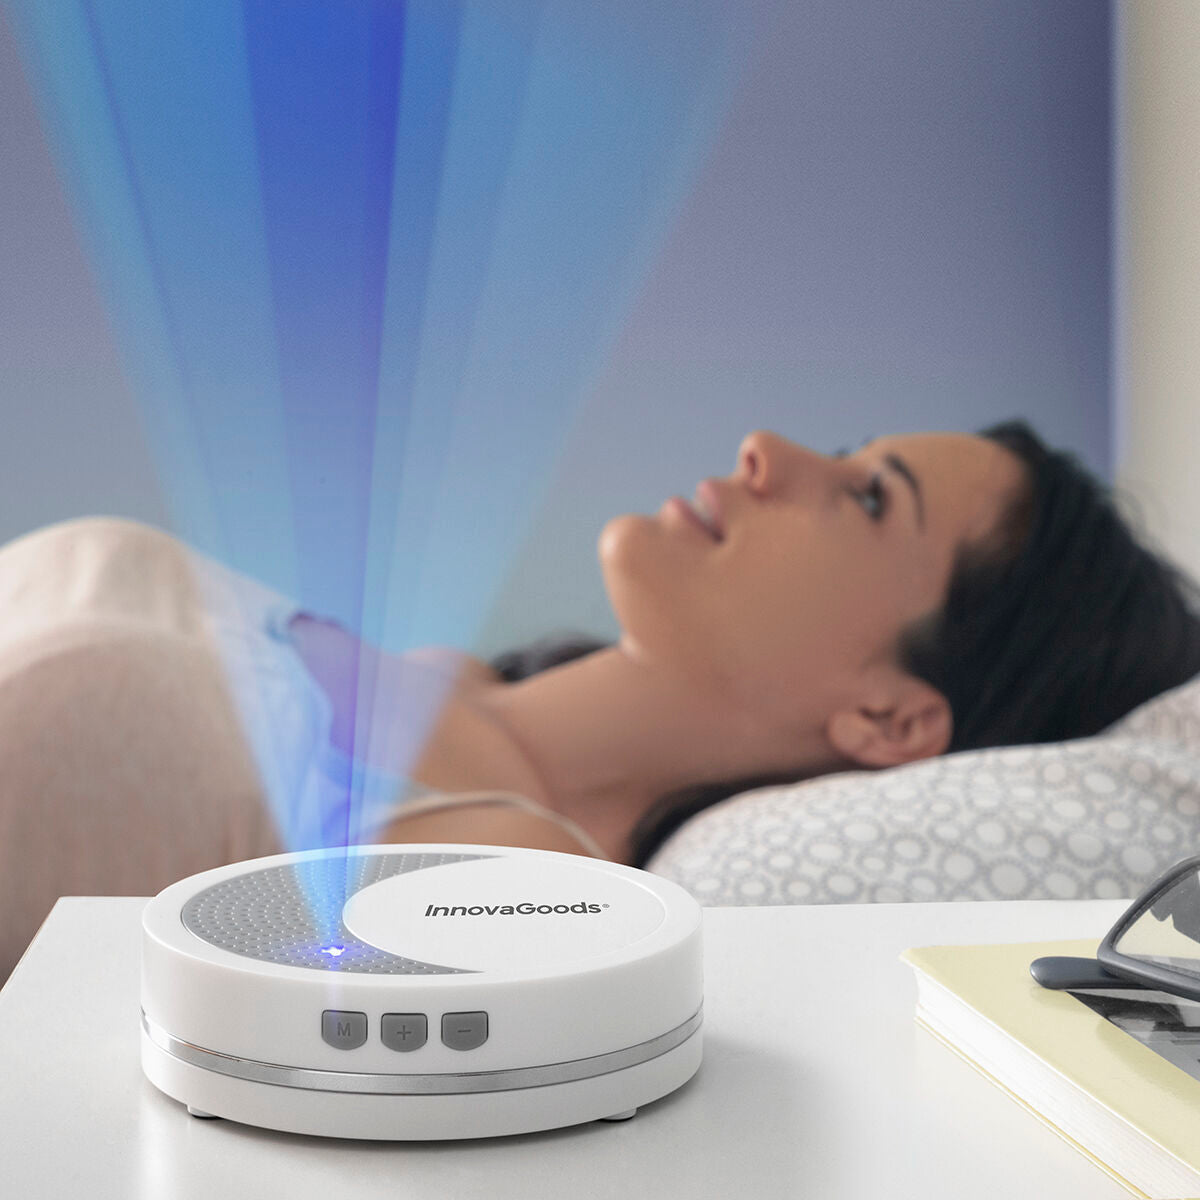 Máquina de Relajación con Luz y Sonido para Dormir Calmind InnovaGoods (Reacondicionado A+)